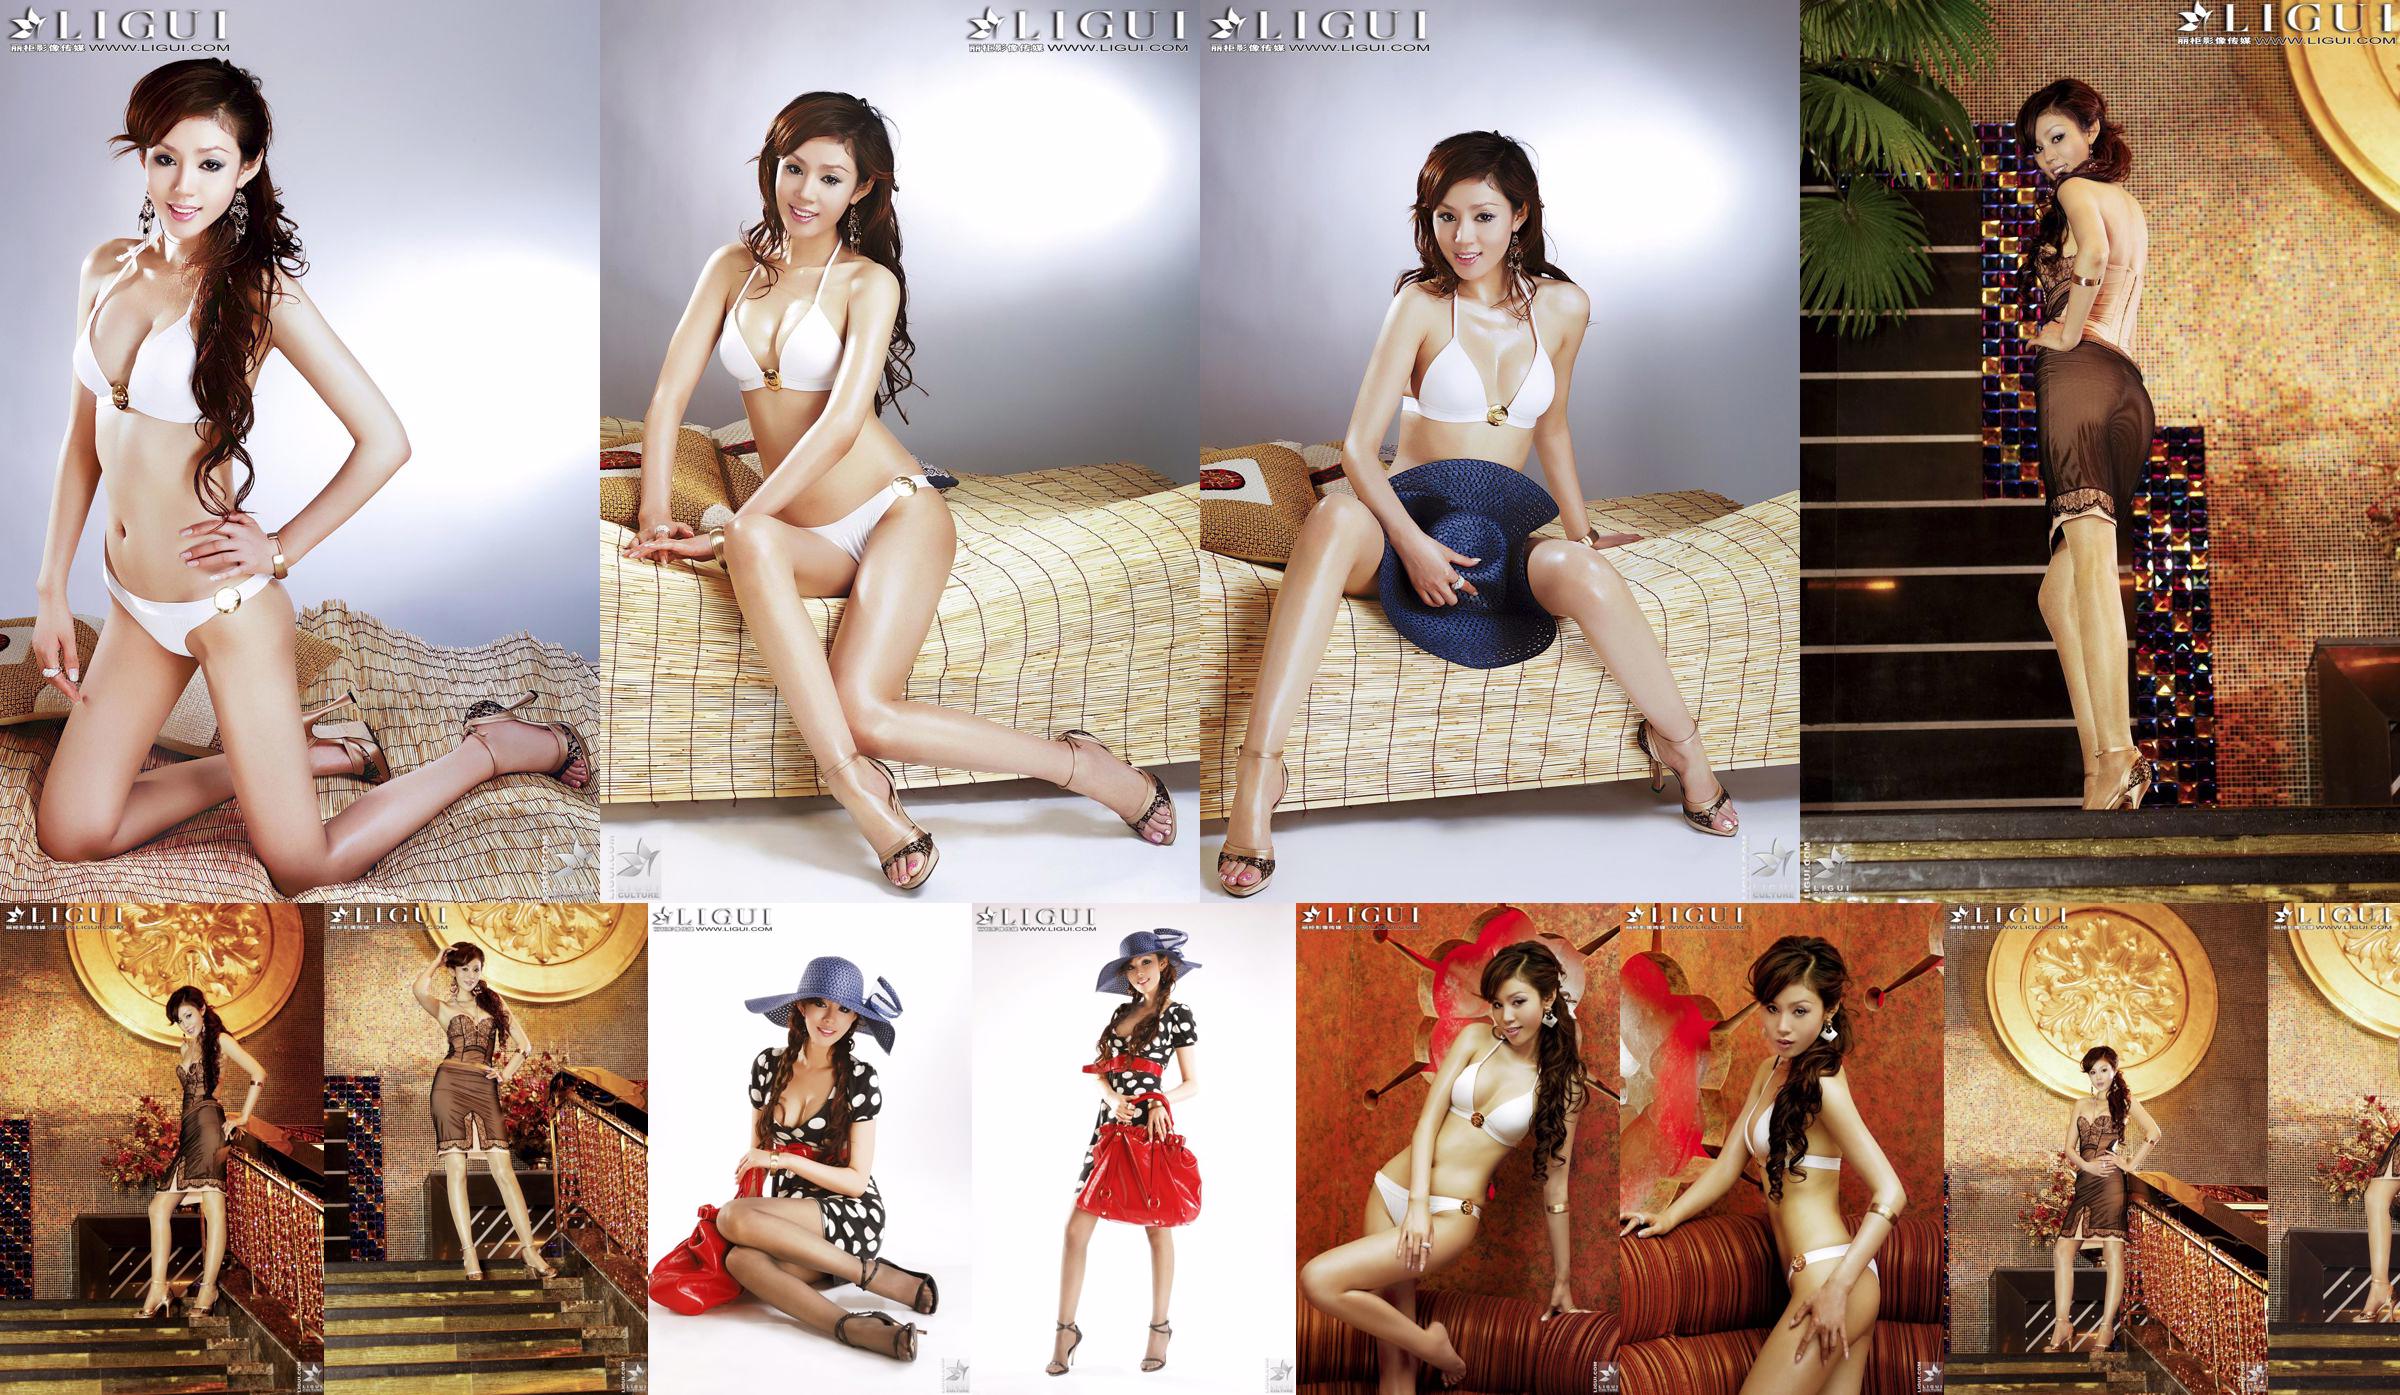 [丽 柜 LiGui] Model Yao Jinjins "Bikini + Kleid" Schöne Beine und seidige Füße Foto Bild No.bedb35 Seite 25